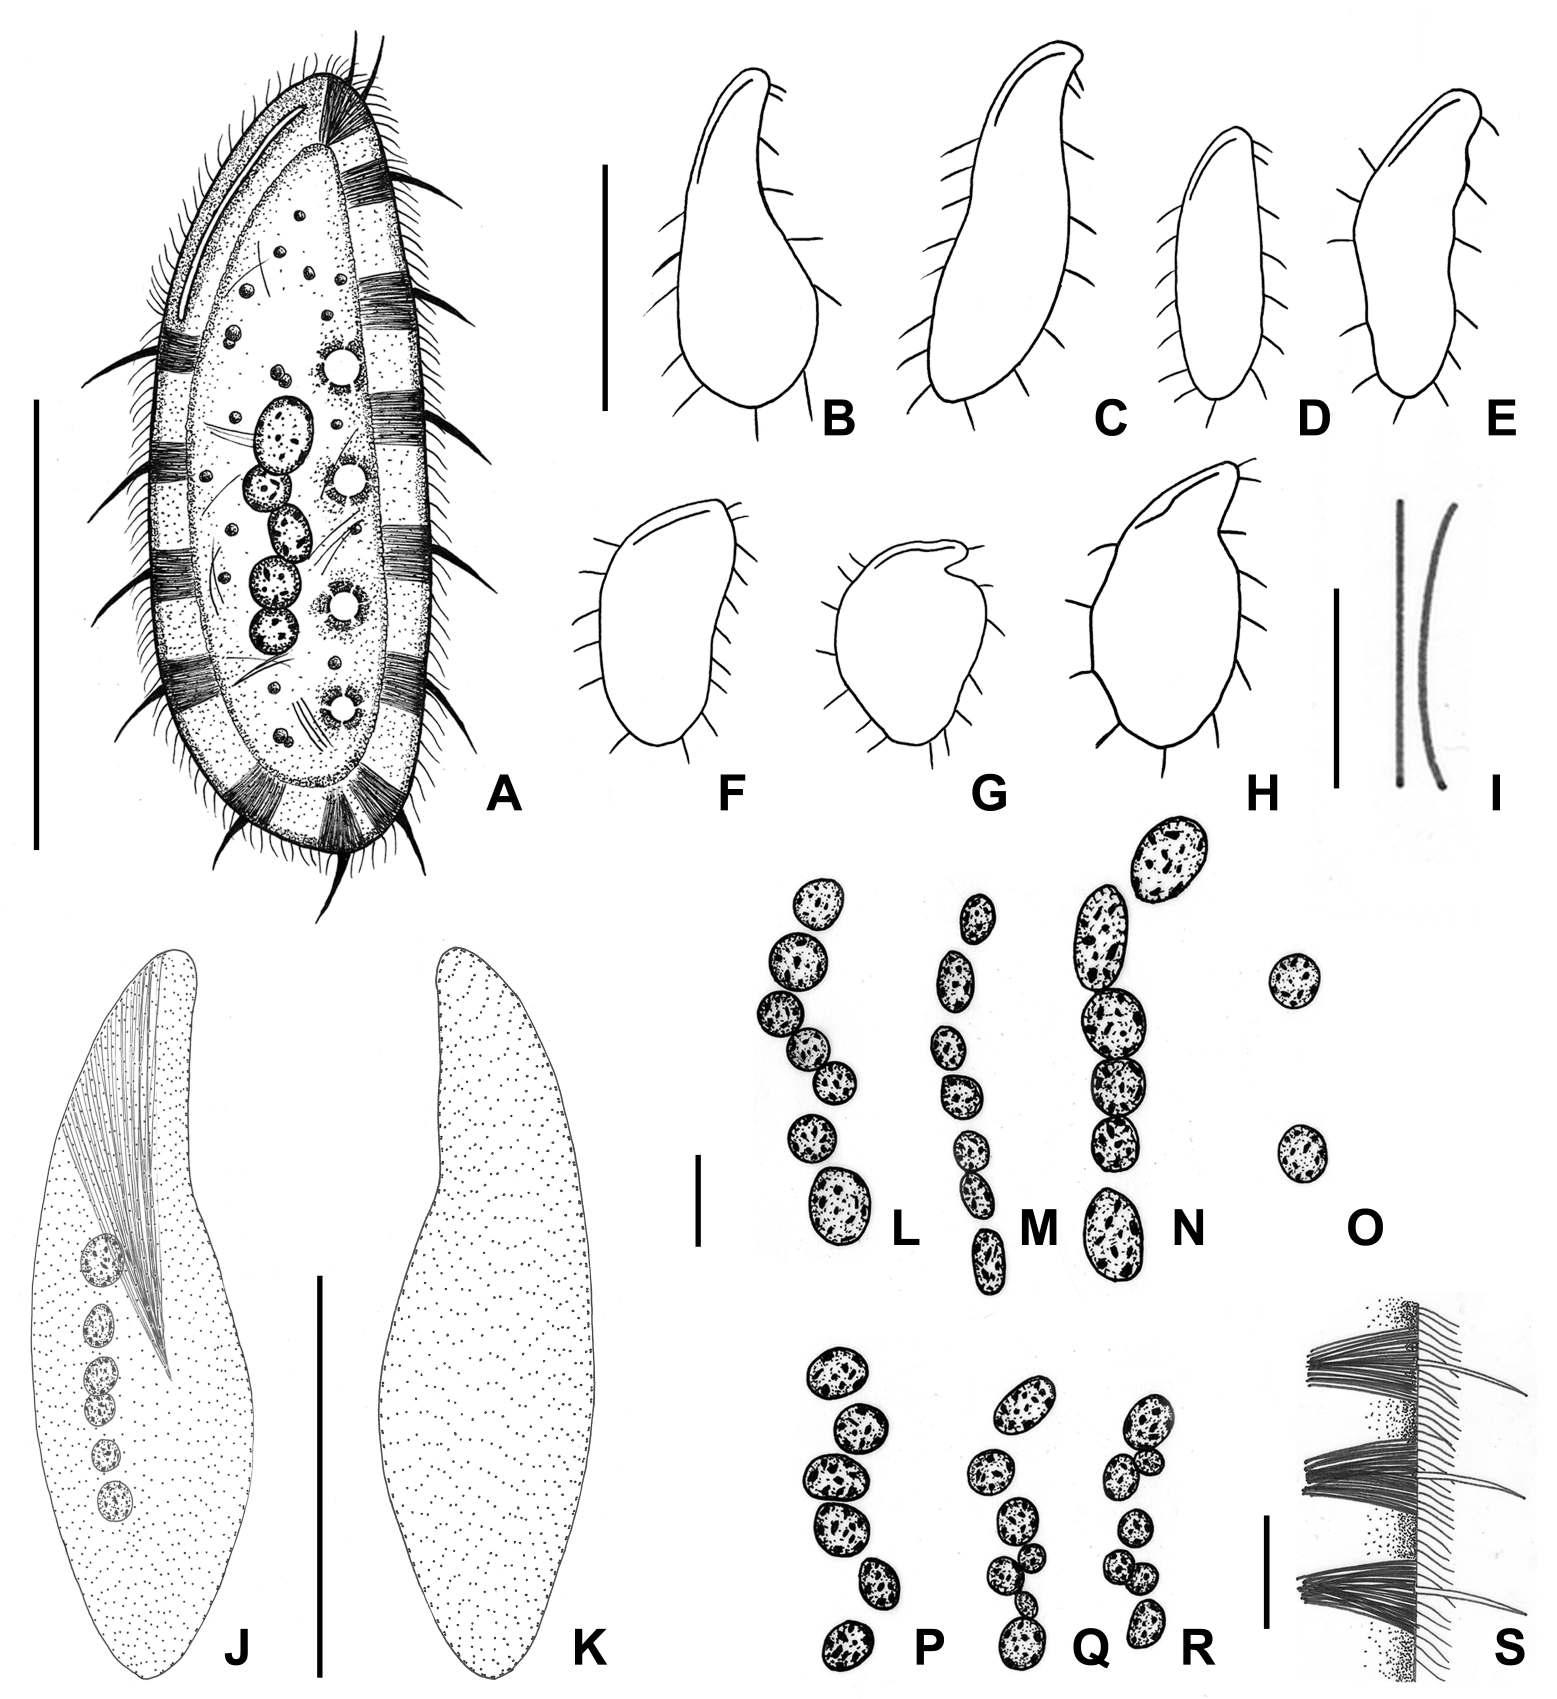 Kentrophyllum n. sp. from live (A-H, S), after protargol impregnation (I-R).